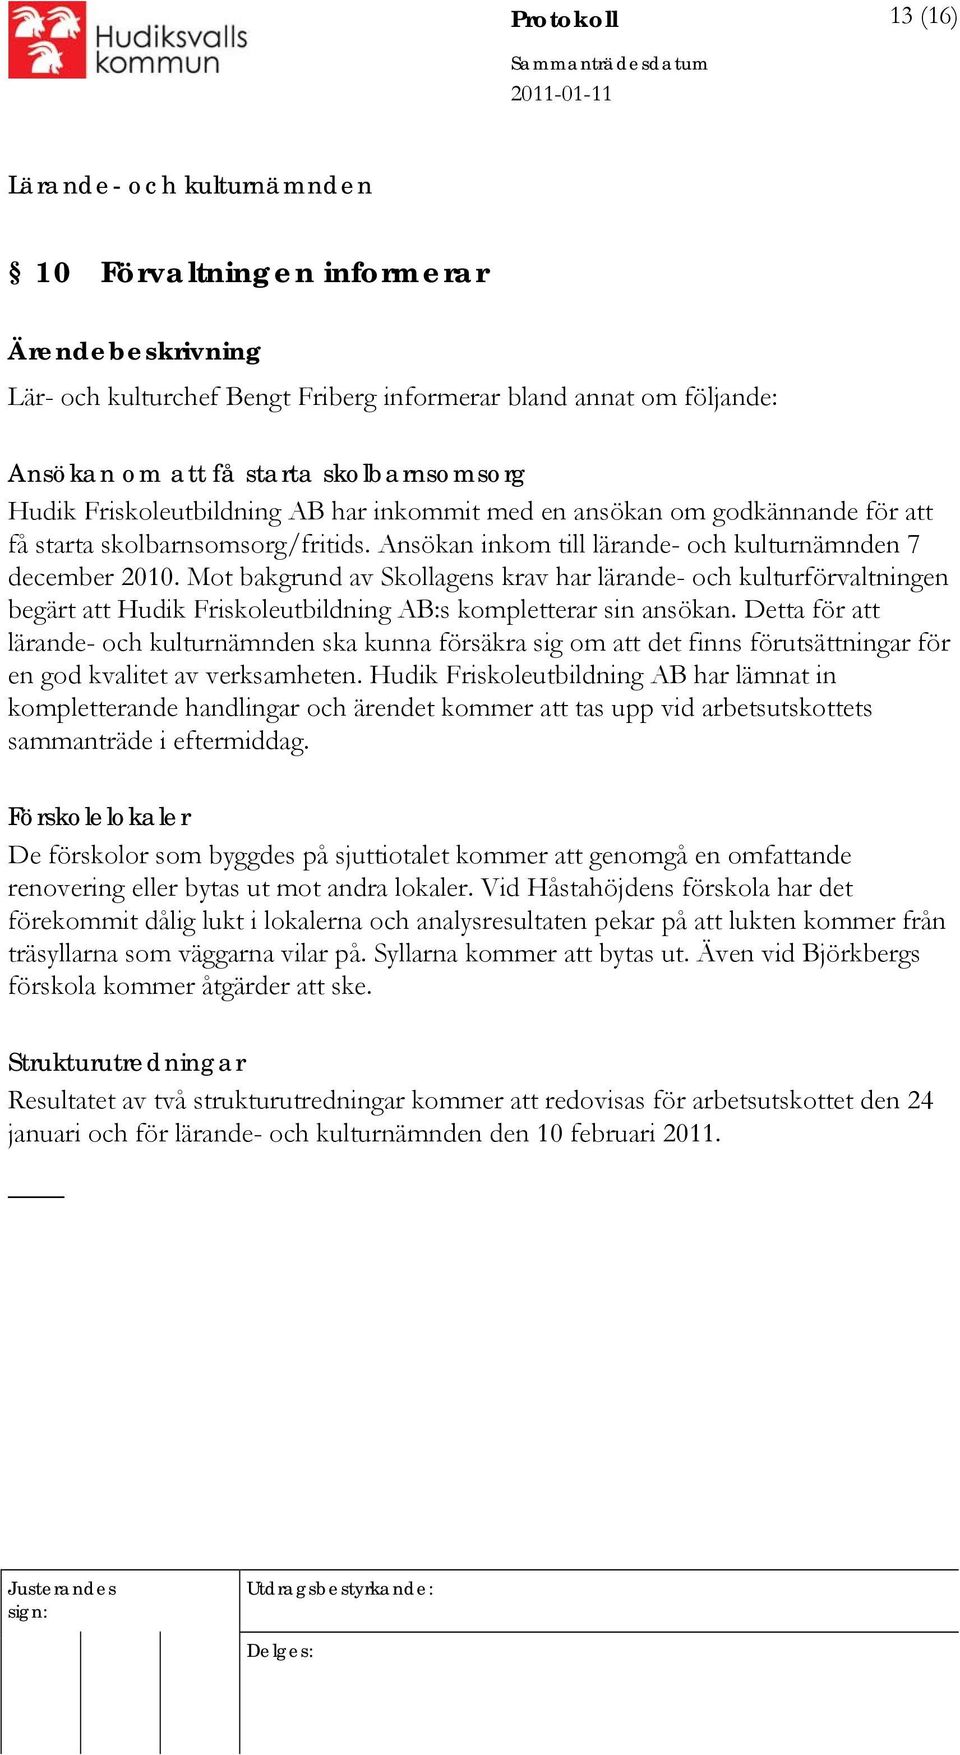 Mot bakgrund av Skollagens krav har lärande- och kulturförvaltningen begärt att Hudik Friskoleutbildning AB:s kompletterar sin ansökan.